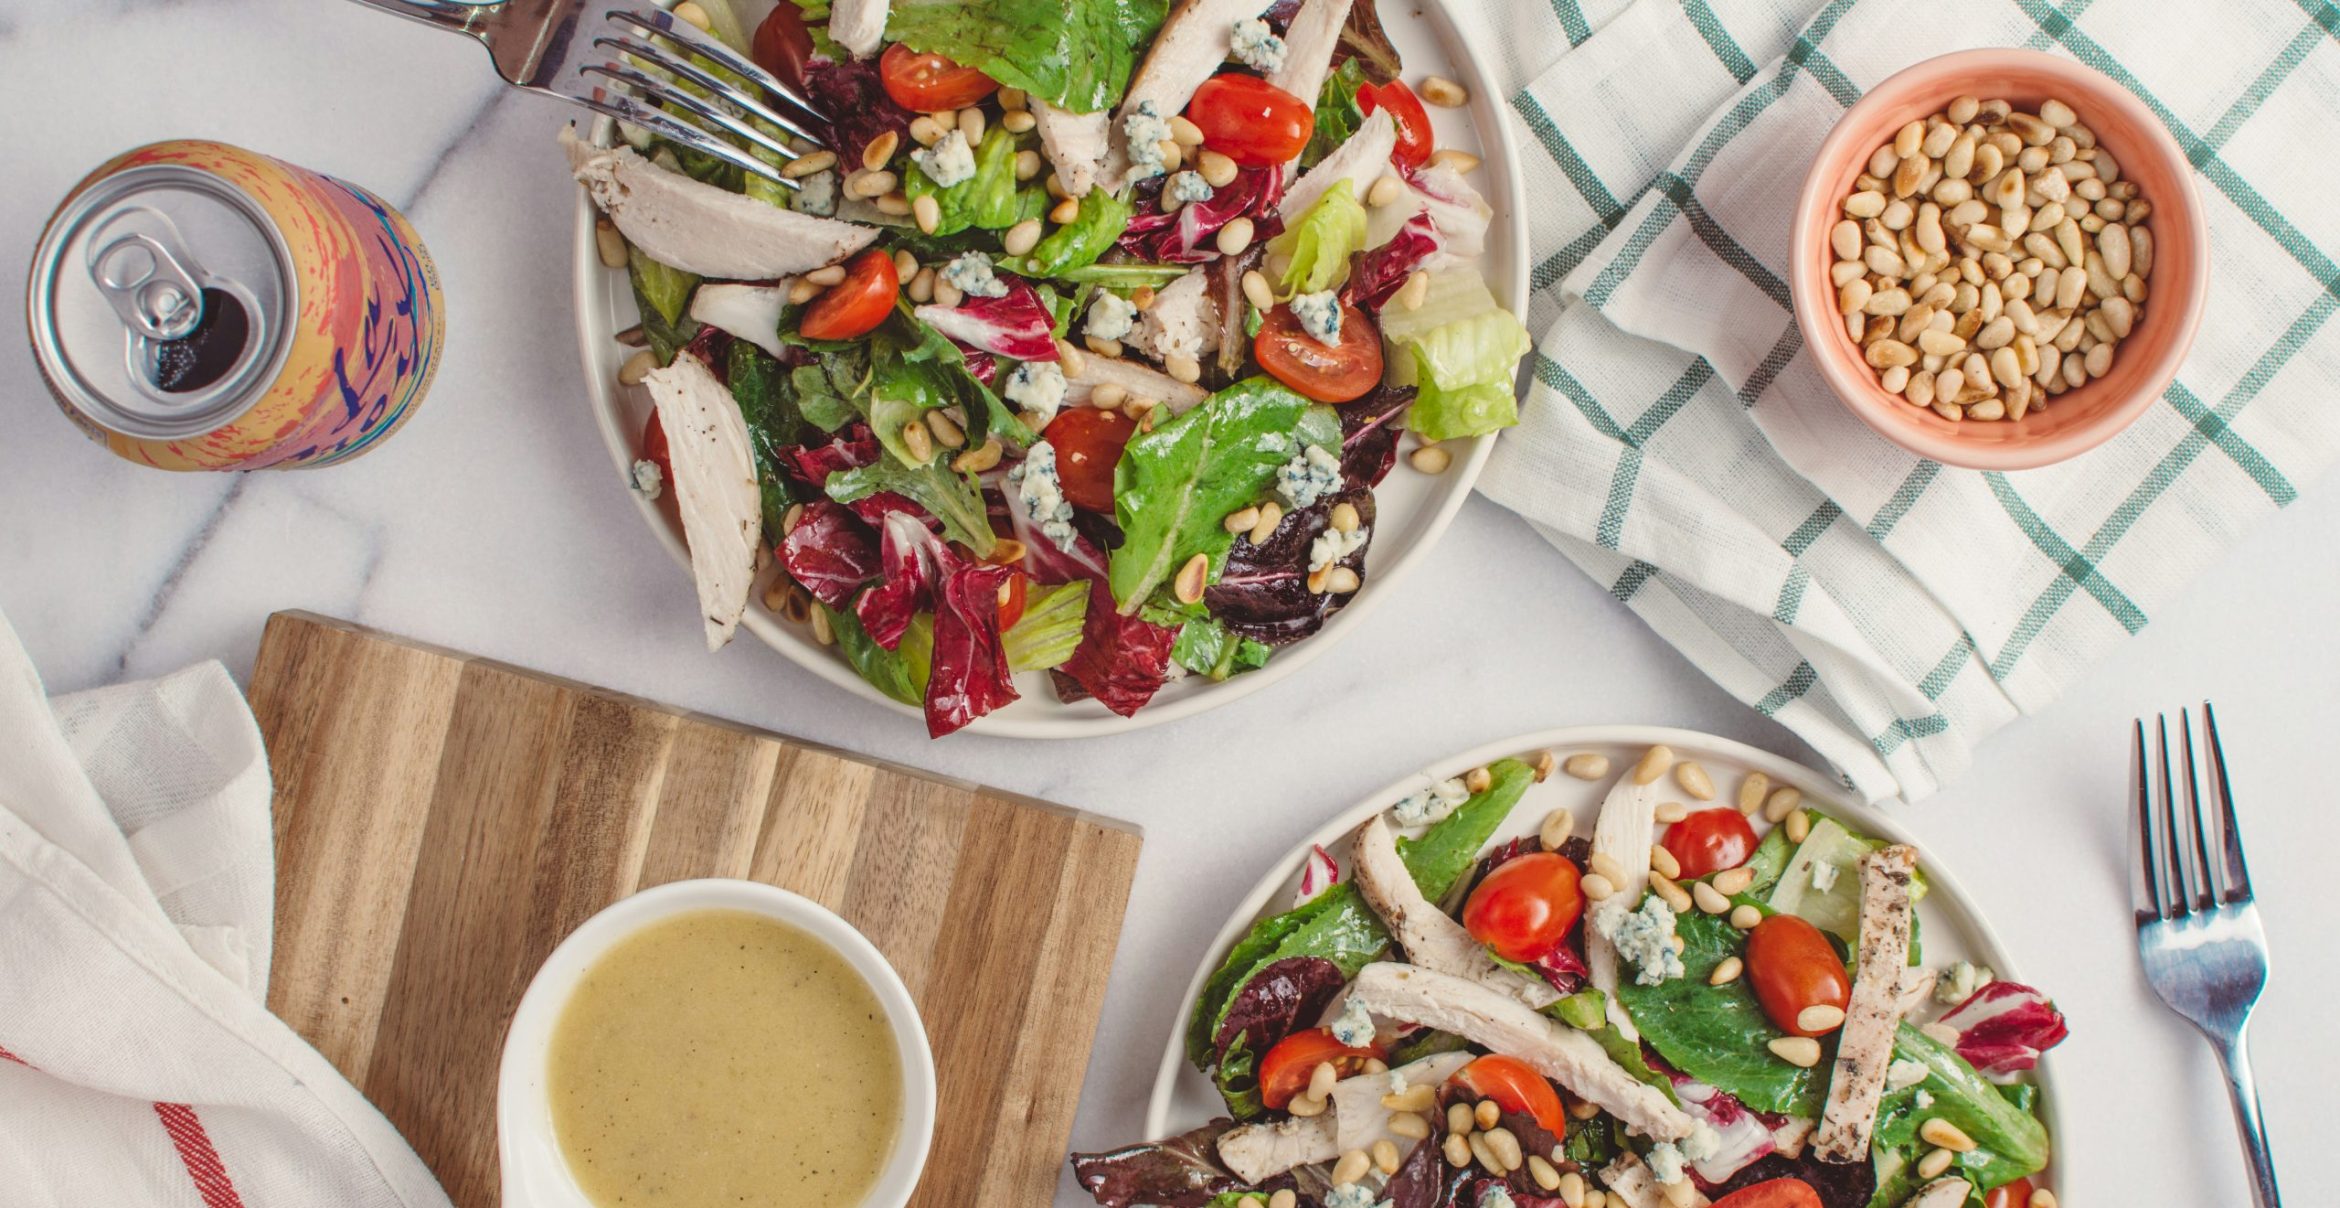 Employee Wellbeing: Wie Salat-Bowls die Mitarbeiterbindung stärken  